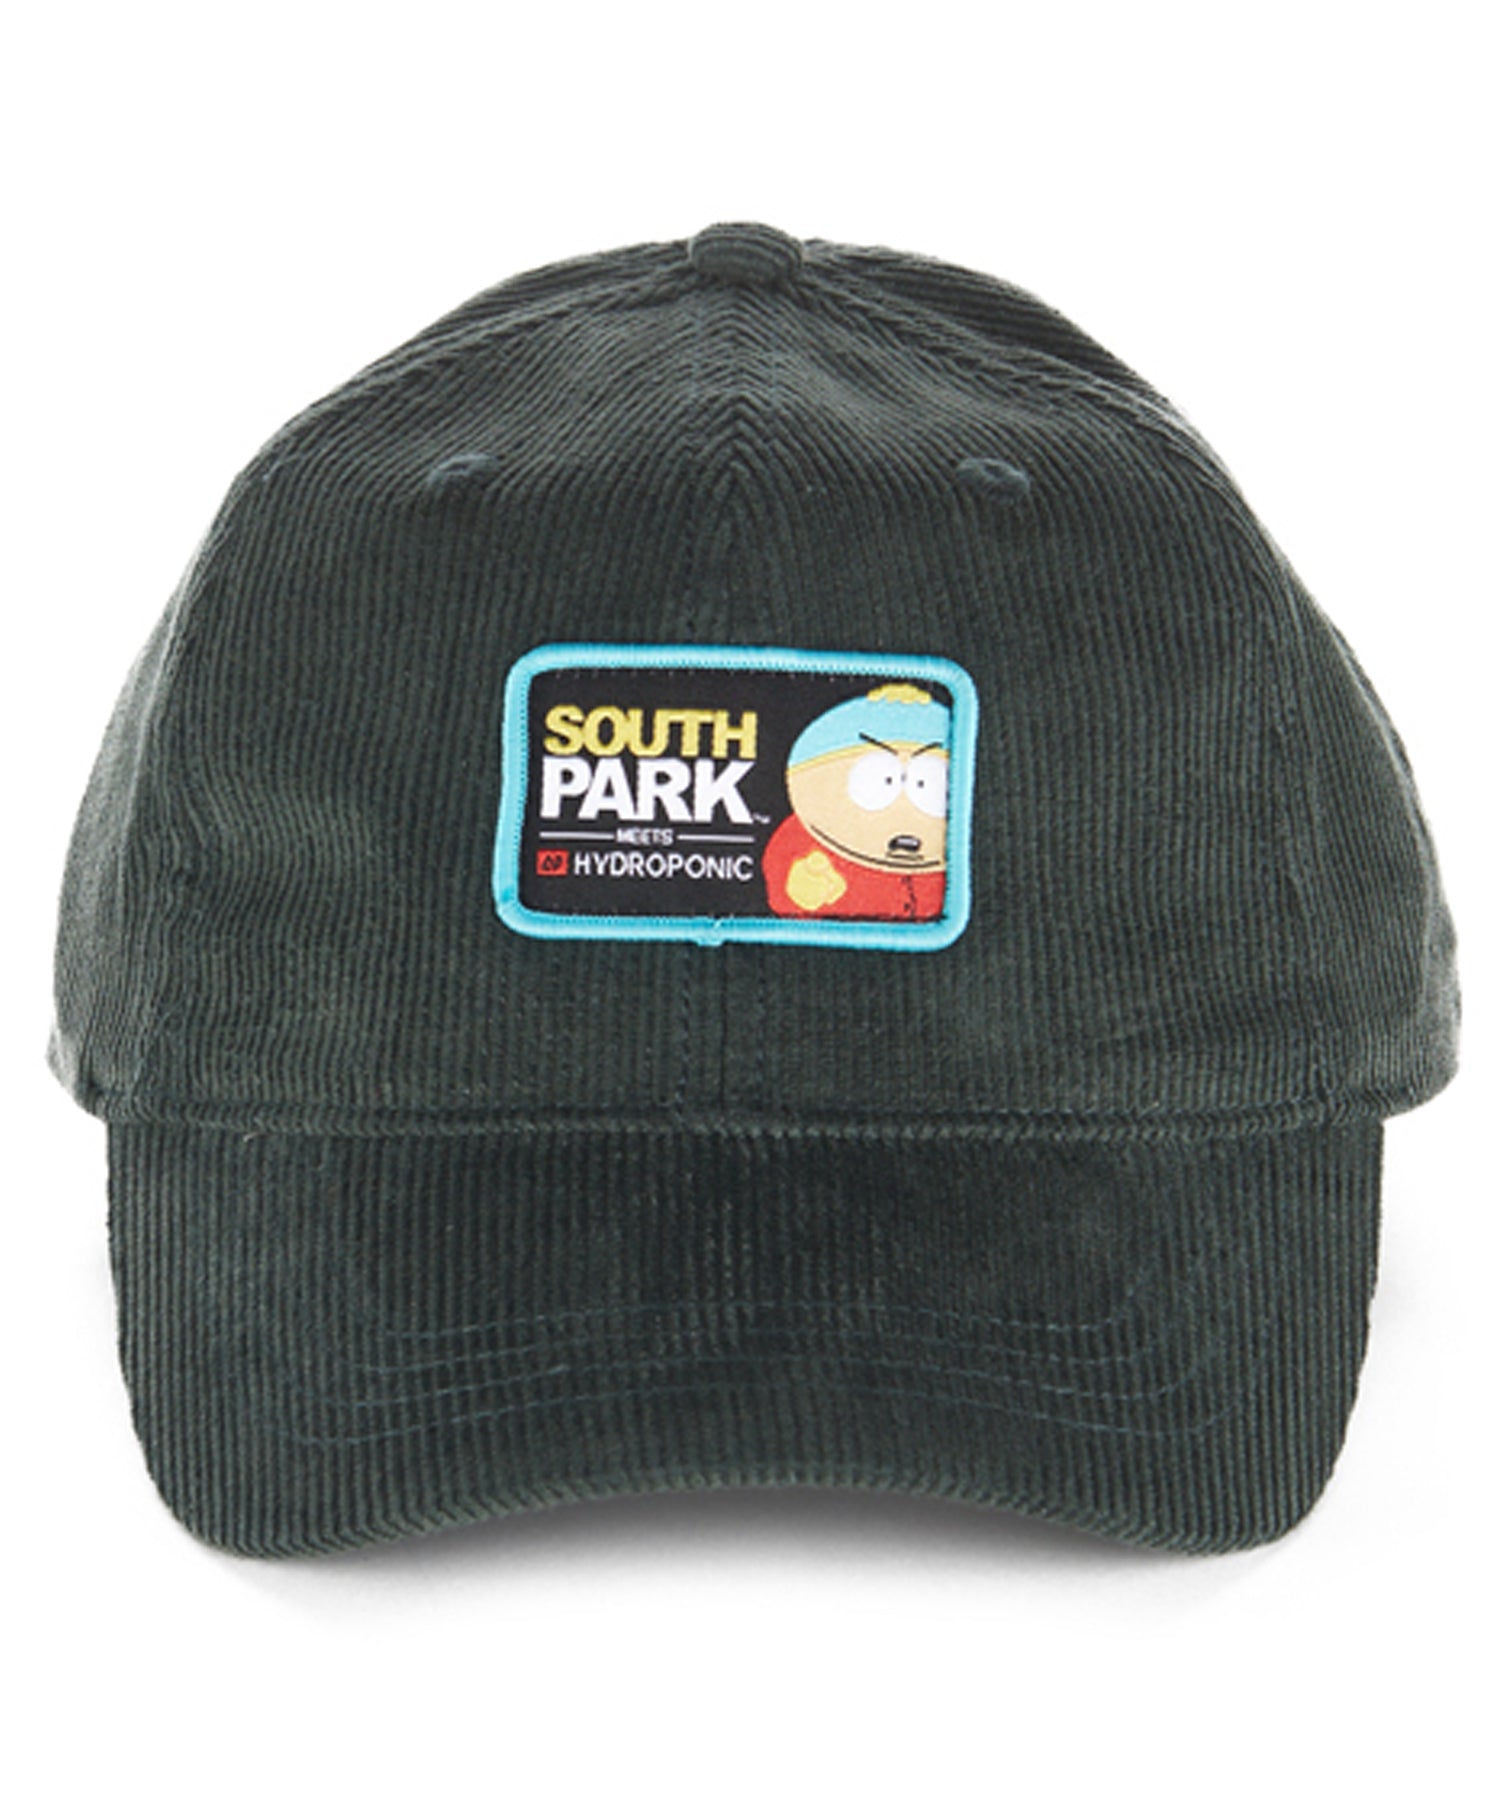 hydroponic-gorra-south-park-cartman-green-grey-corduroy-Gorra de pana de 5 paneles-colaboración oficial de South Park X Hydroponic-color verde-logo south park